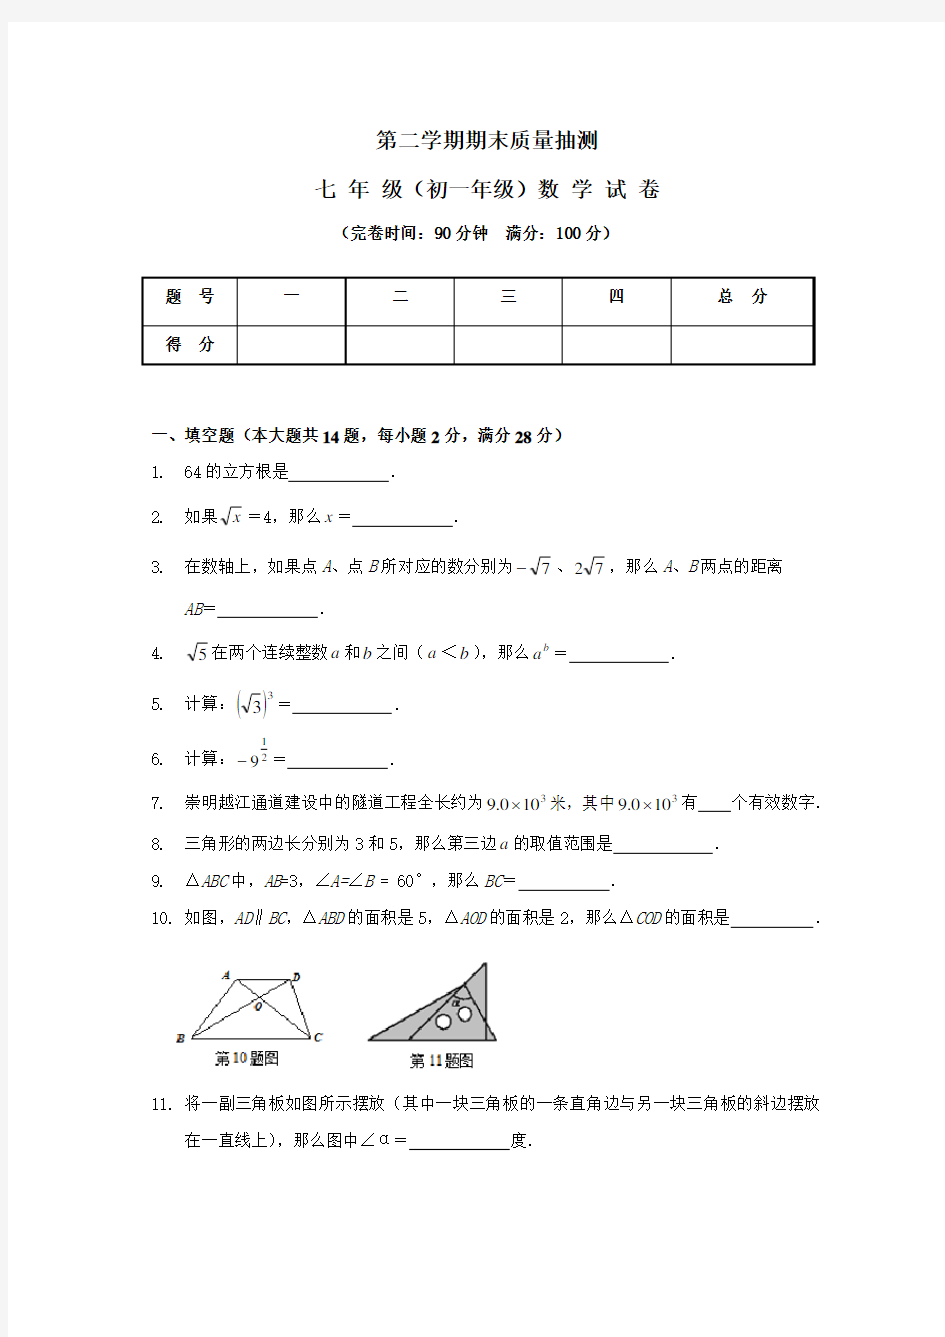 上海市七年级(初一)数学期末考试试卷(难度相当适宜)